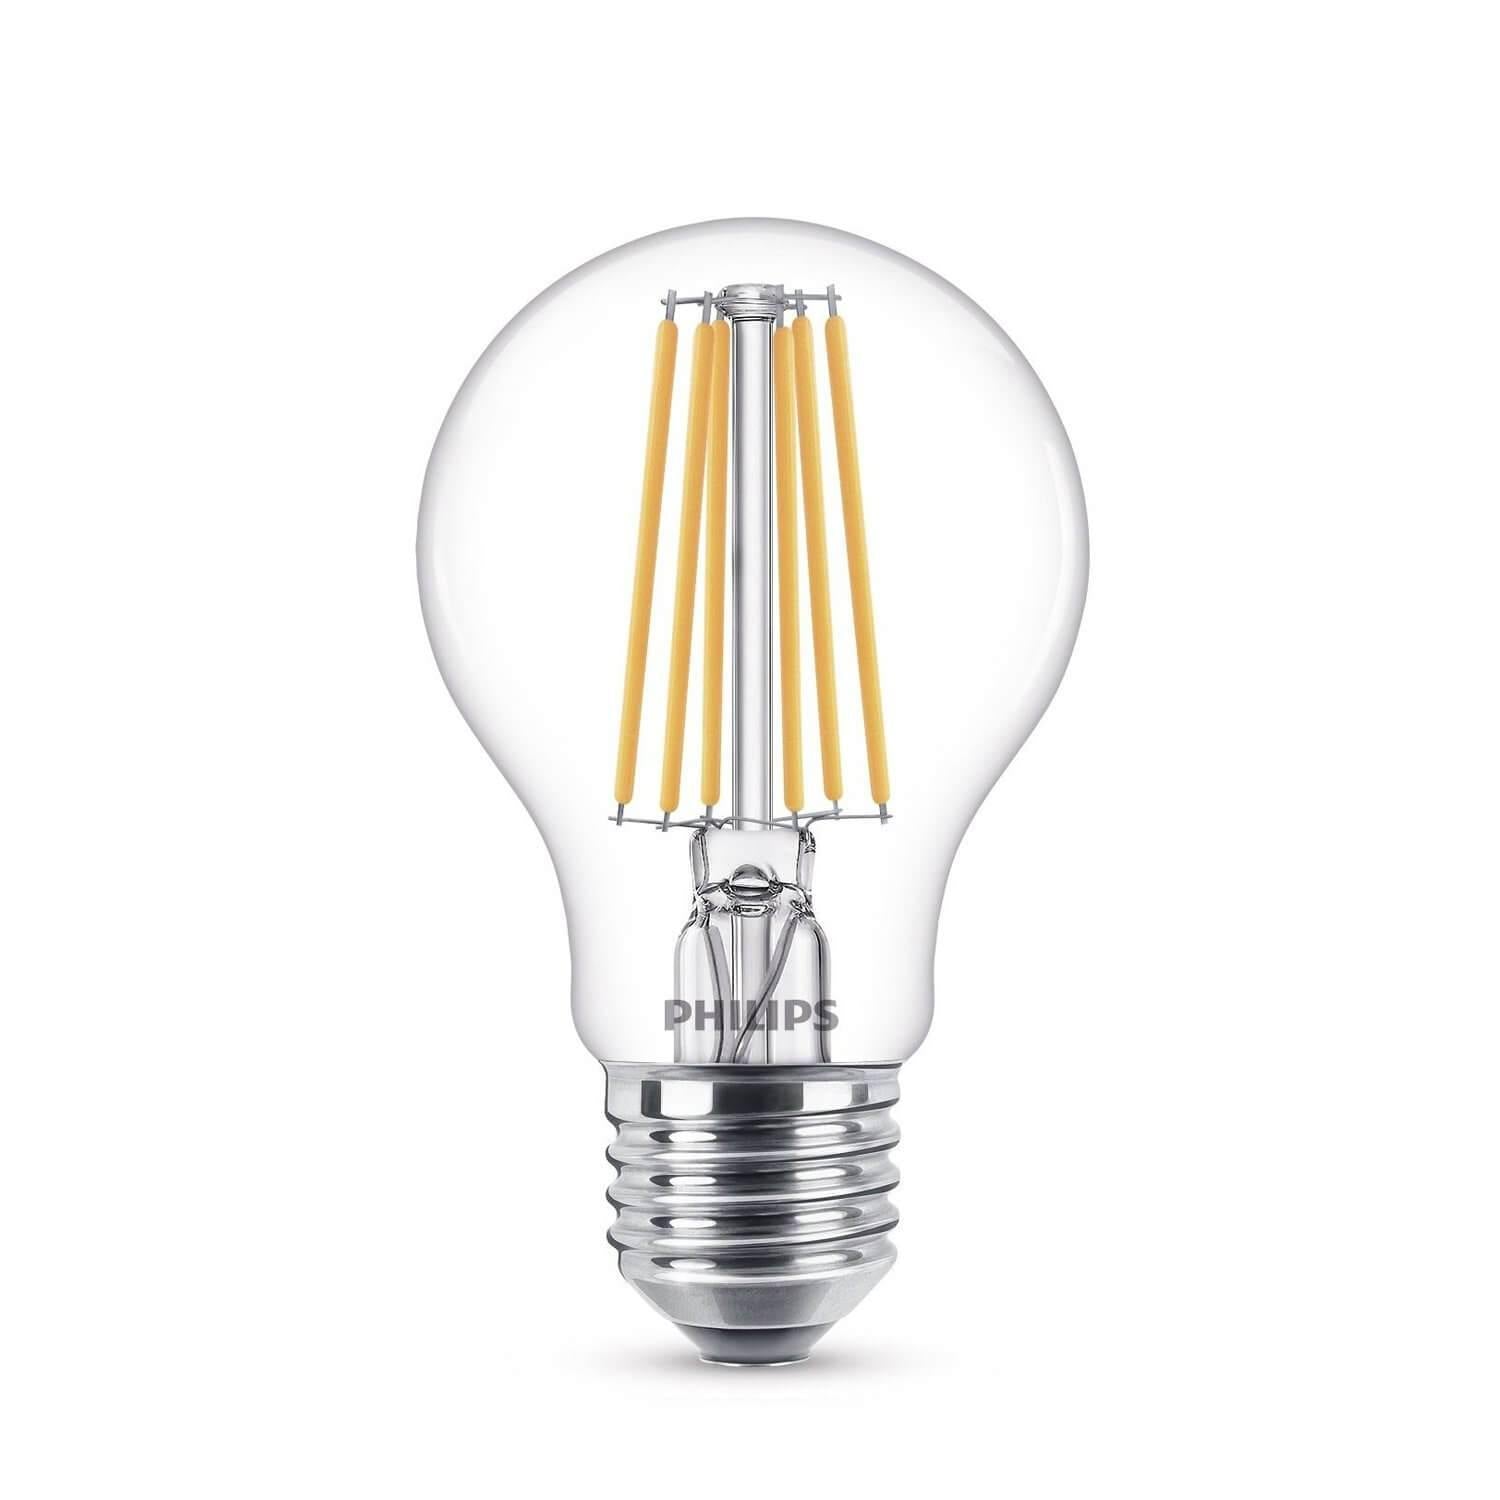 Domicilio Bec LED Philips A67 E27 11W 1521 lumeni, cu filament pentru corpuri de iluminat, lustre, veioze sau lampadare